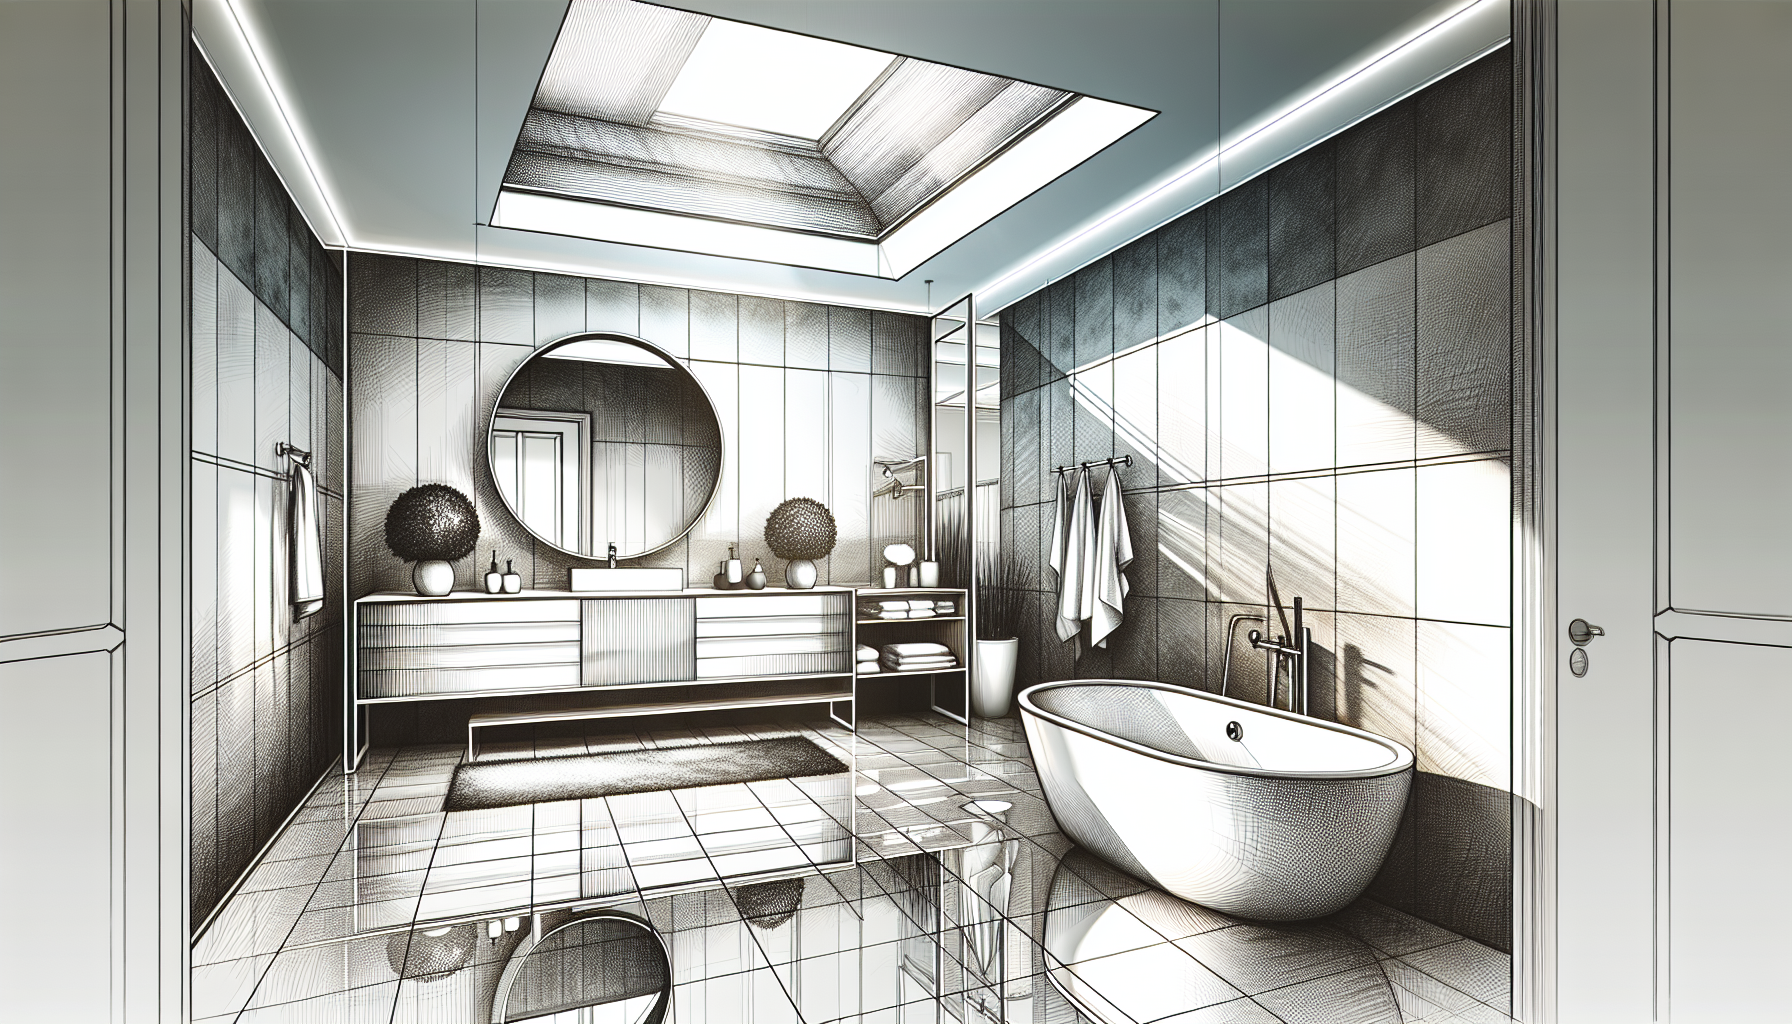 Planung der Badsanierung – Der Weg zum neuen Bad: Skizze eines renovierten Badezimmers